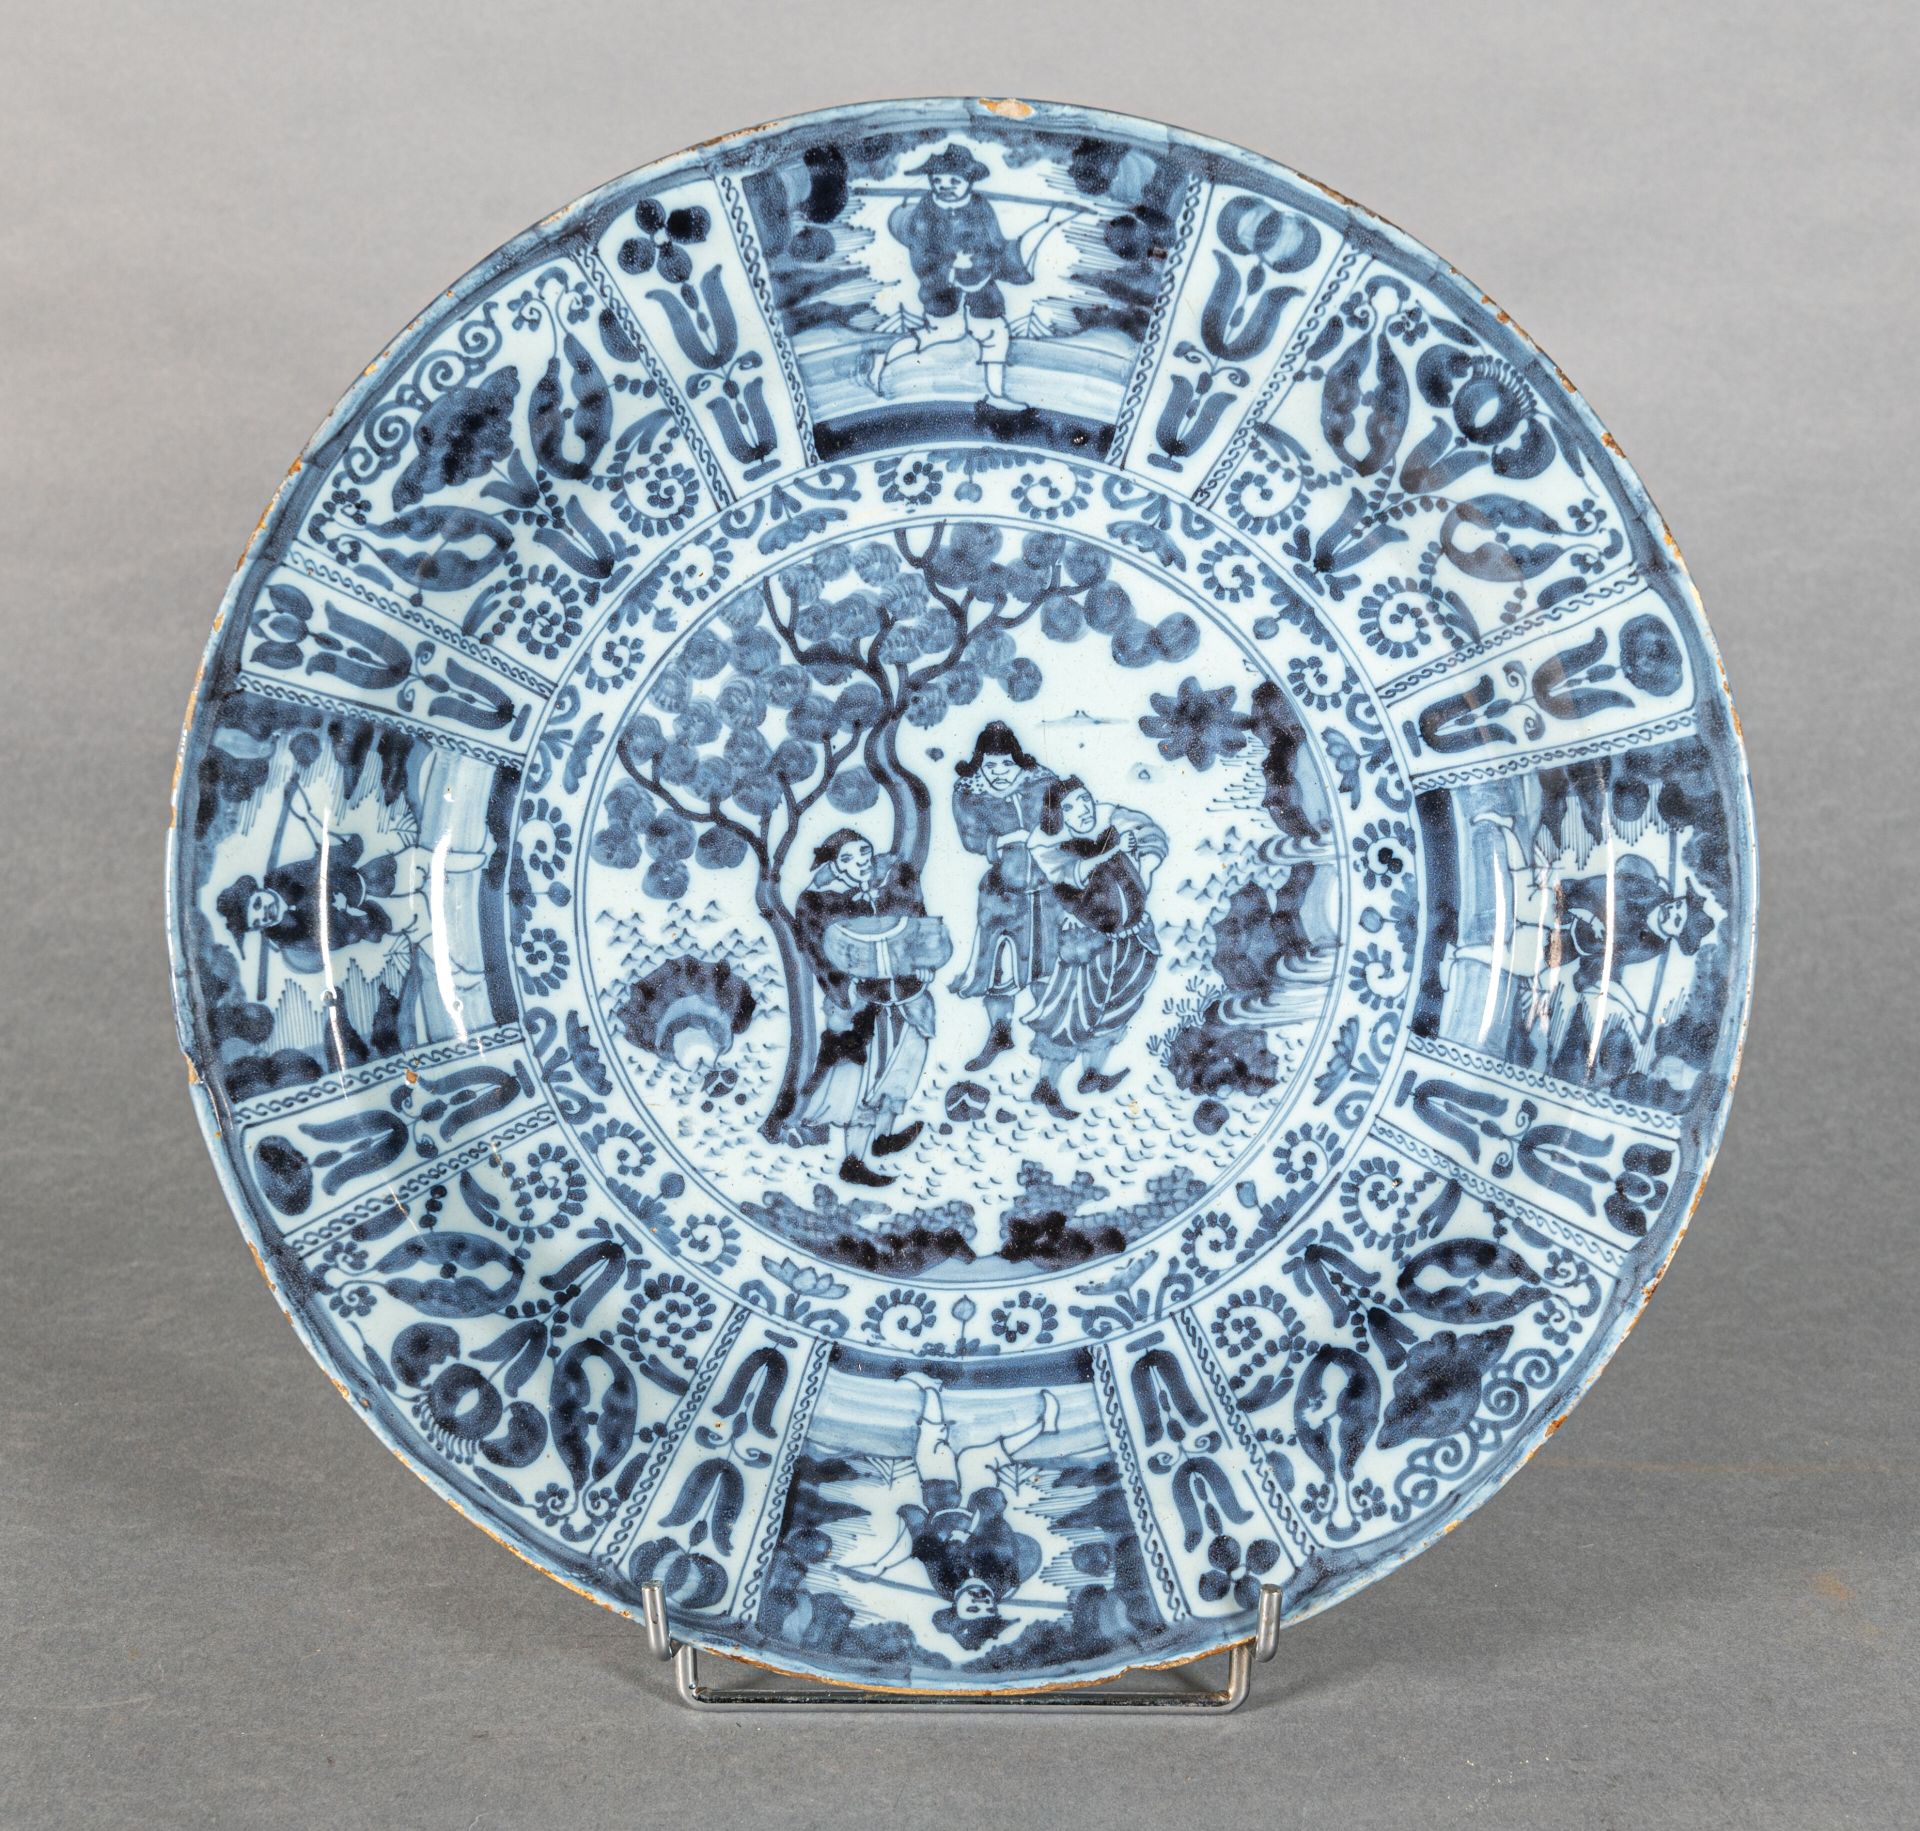 Null DELFT
Runde Platte aus Steingut mit bläulichem Hintergrund, dekoriert in bl&hellip;